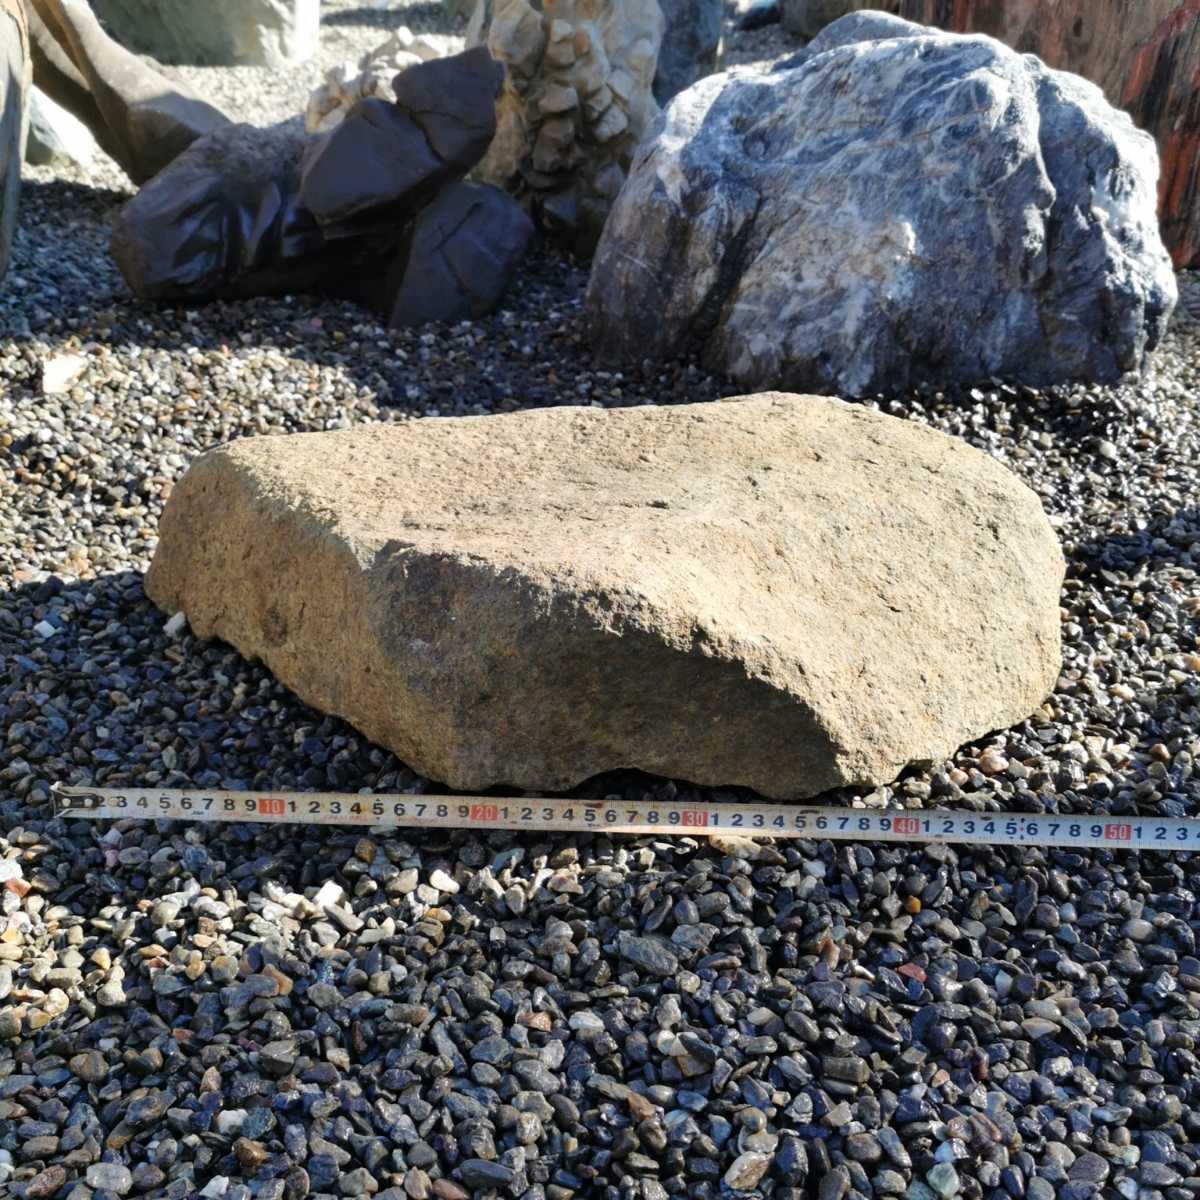  седло лошадь камень 34.1 kilo двор камень оценка камень поддон камень камень суйсеки лампа . двор цубо двор бонсай садоводство украшение произведение искусства интерьер гравий . сколы от камней 